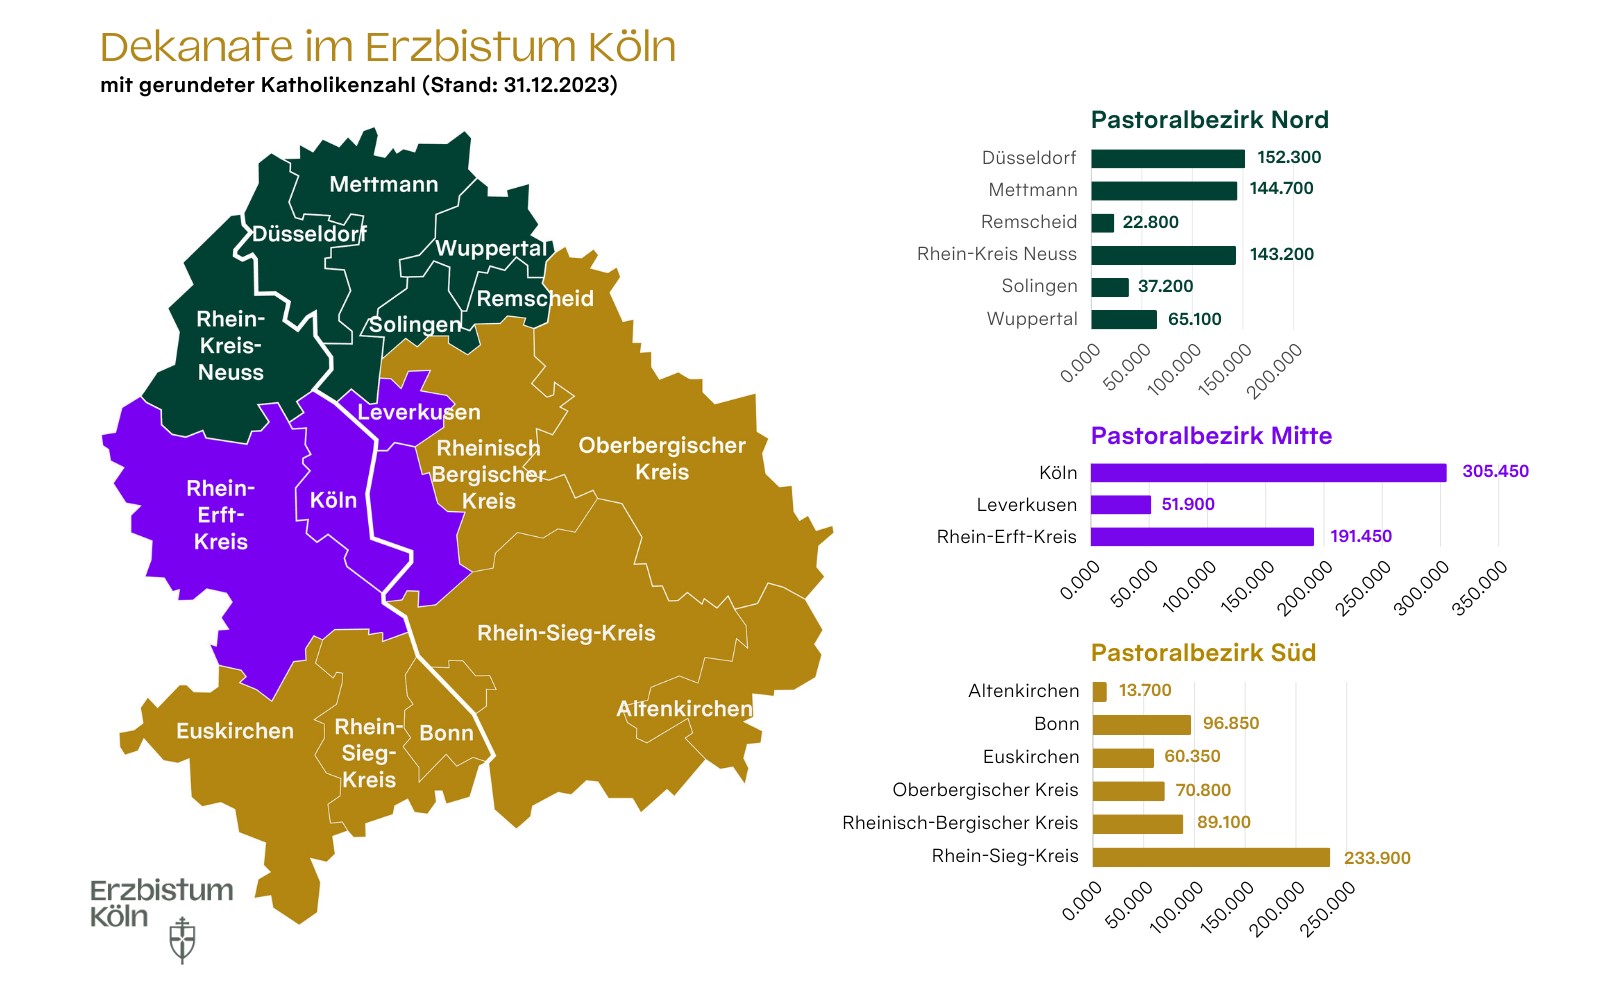 Katholikenzahlen in den Stadt- und Kreisdekanaten des Erzbistums Köln zum 31.12.2023